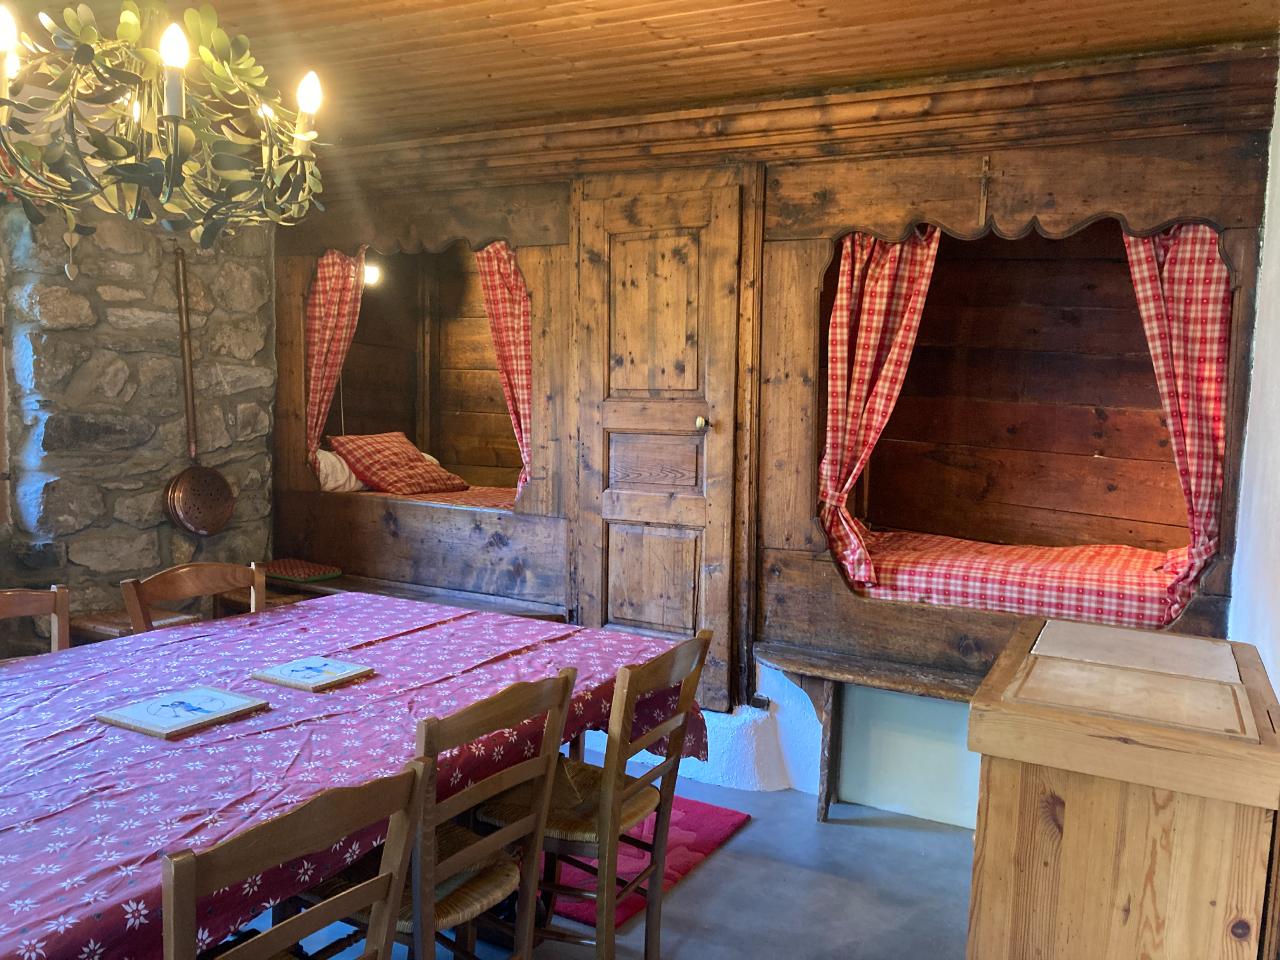 Hôte GreenGo: Chalet la Rivine Authentique ferme savoyarde 15 à 25 couchages ,été hiver, proche piste ski Valloire - Image 3